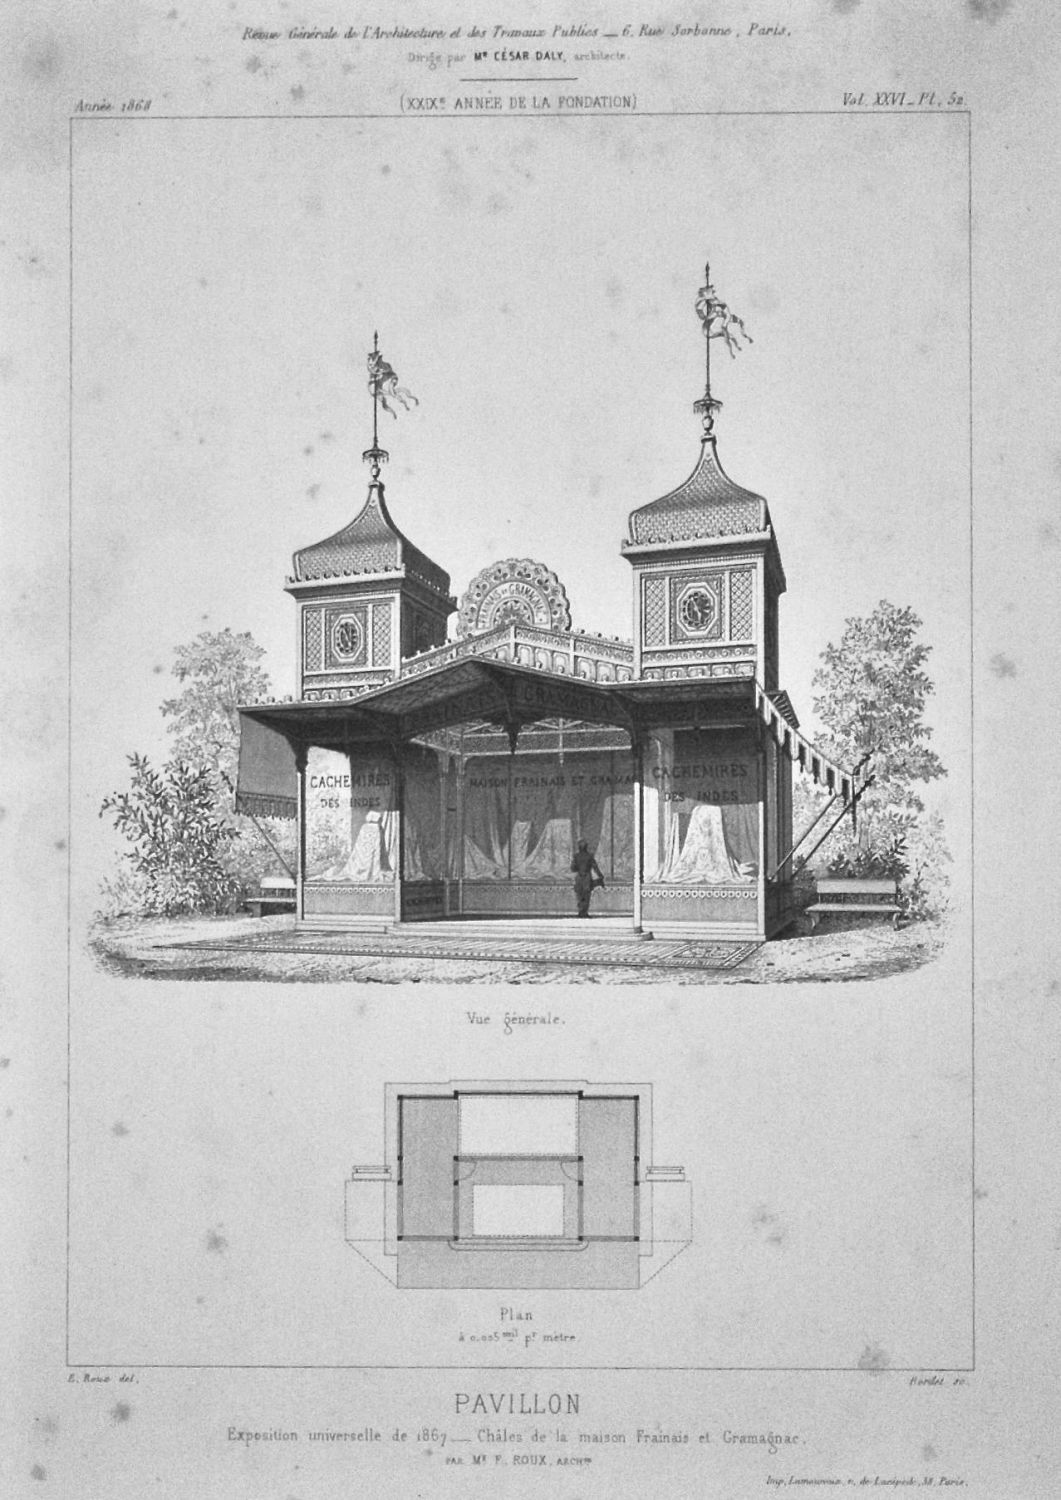 Pavillon. : Exposition universelle de 1867. Charles de la maison Franais et